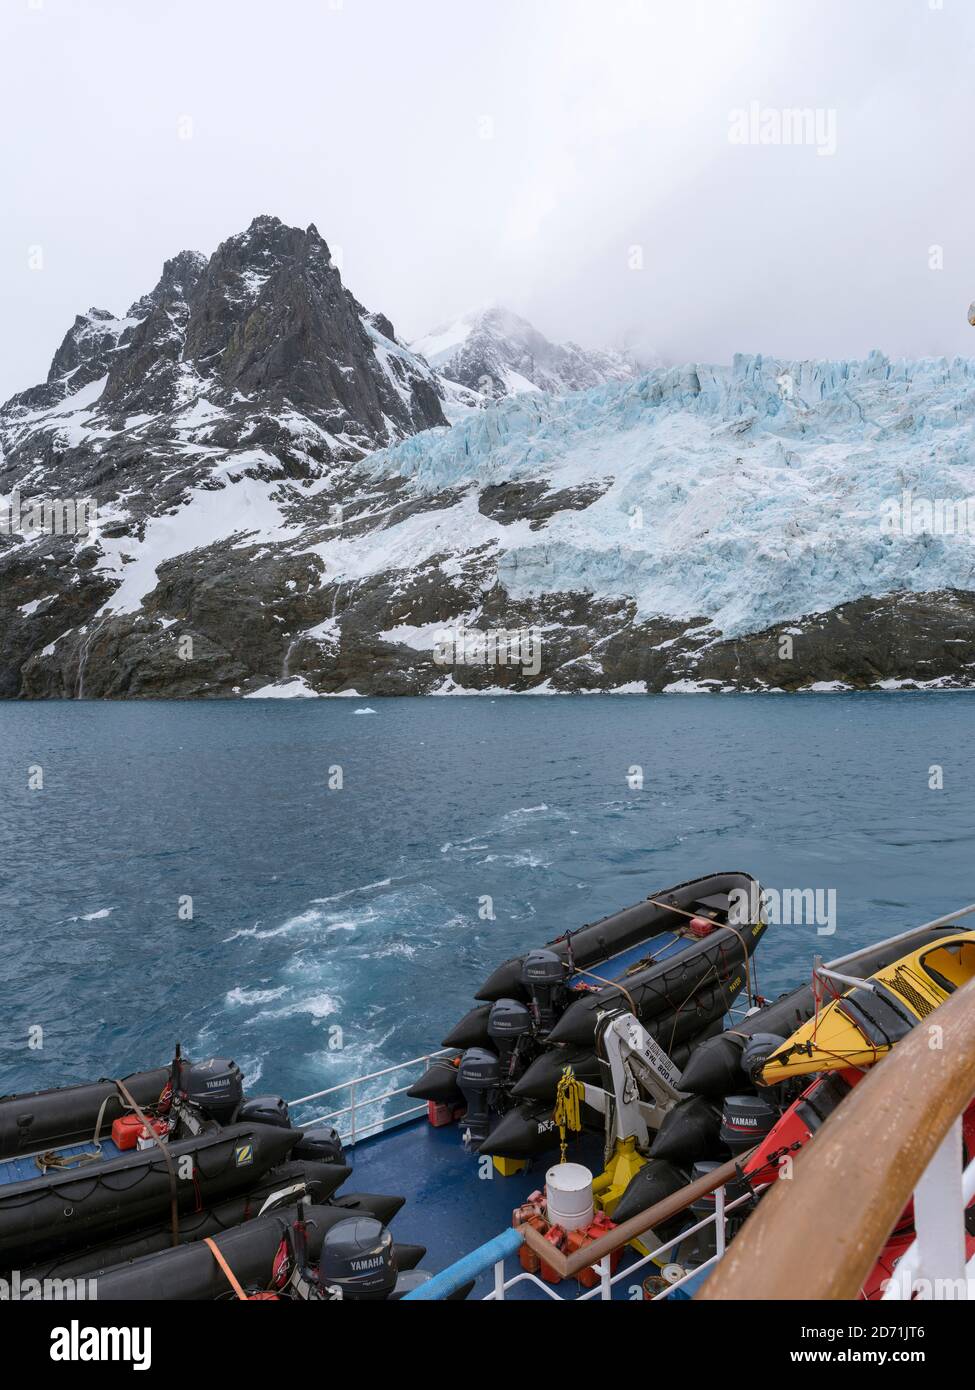 Glaciers du fjord de Drygalski à l'extrémité sud de la Géorgie du Sud. MS Sea Spirit au premier plan. Antarctique, Subantarctica, Géorgie du Sud, octobre Banque D'Images